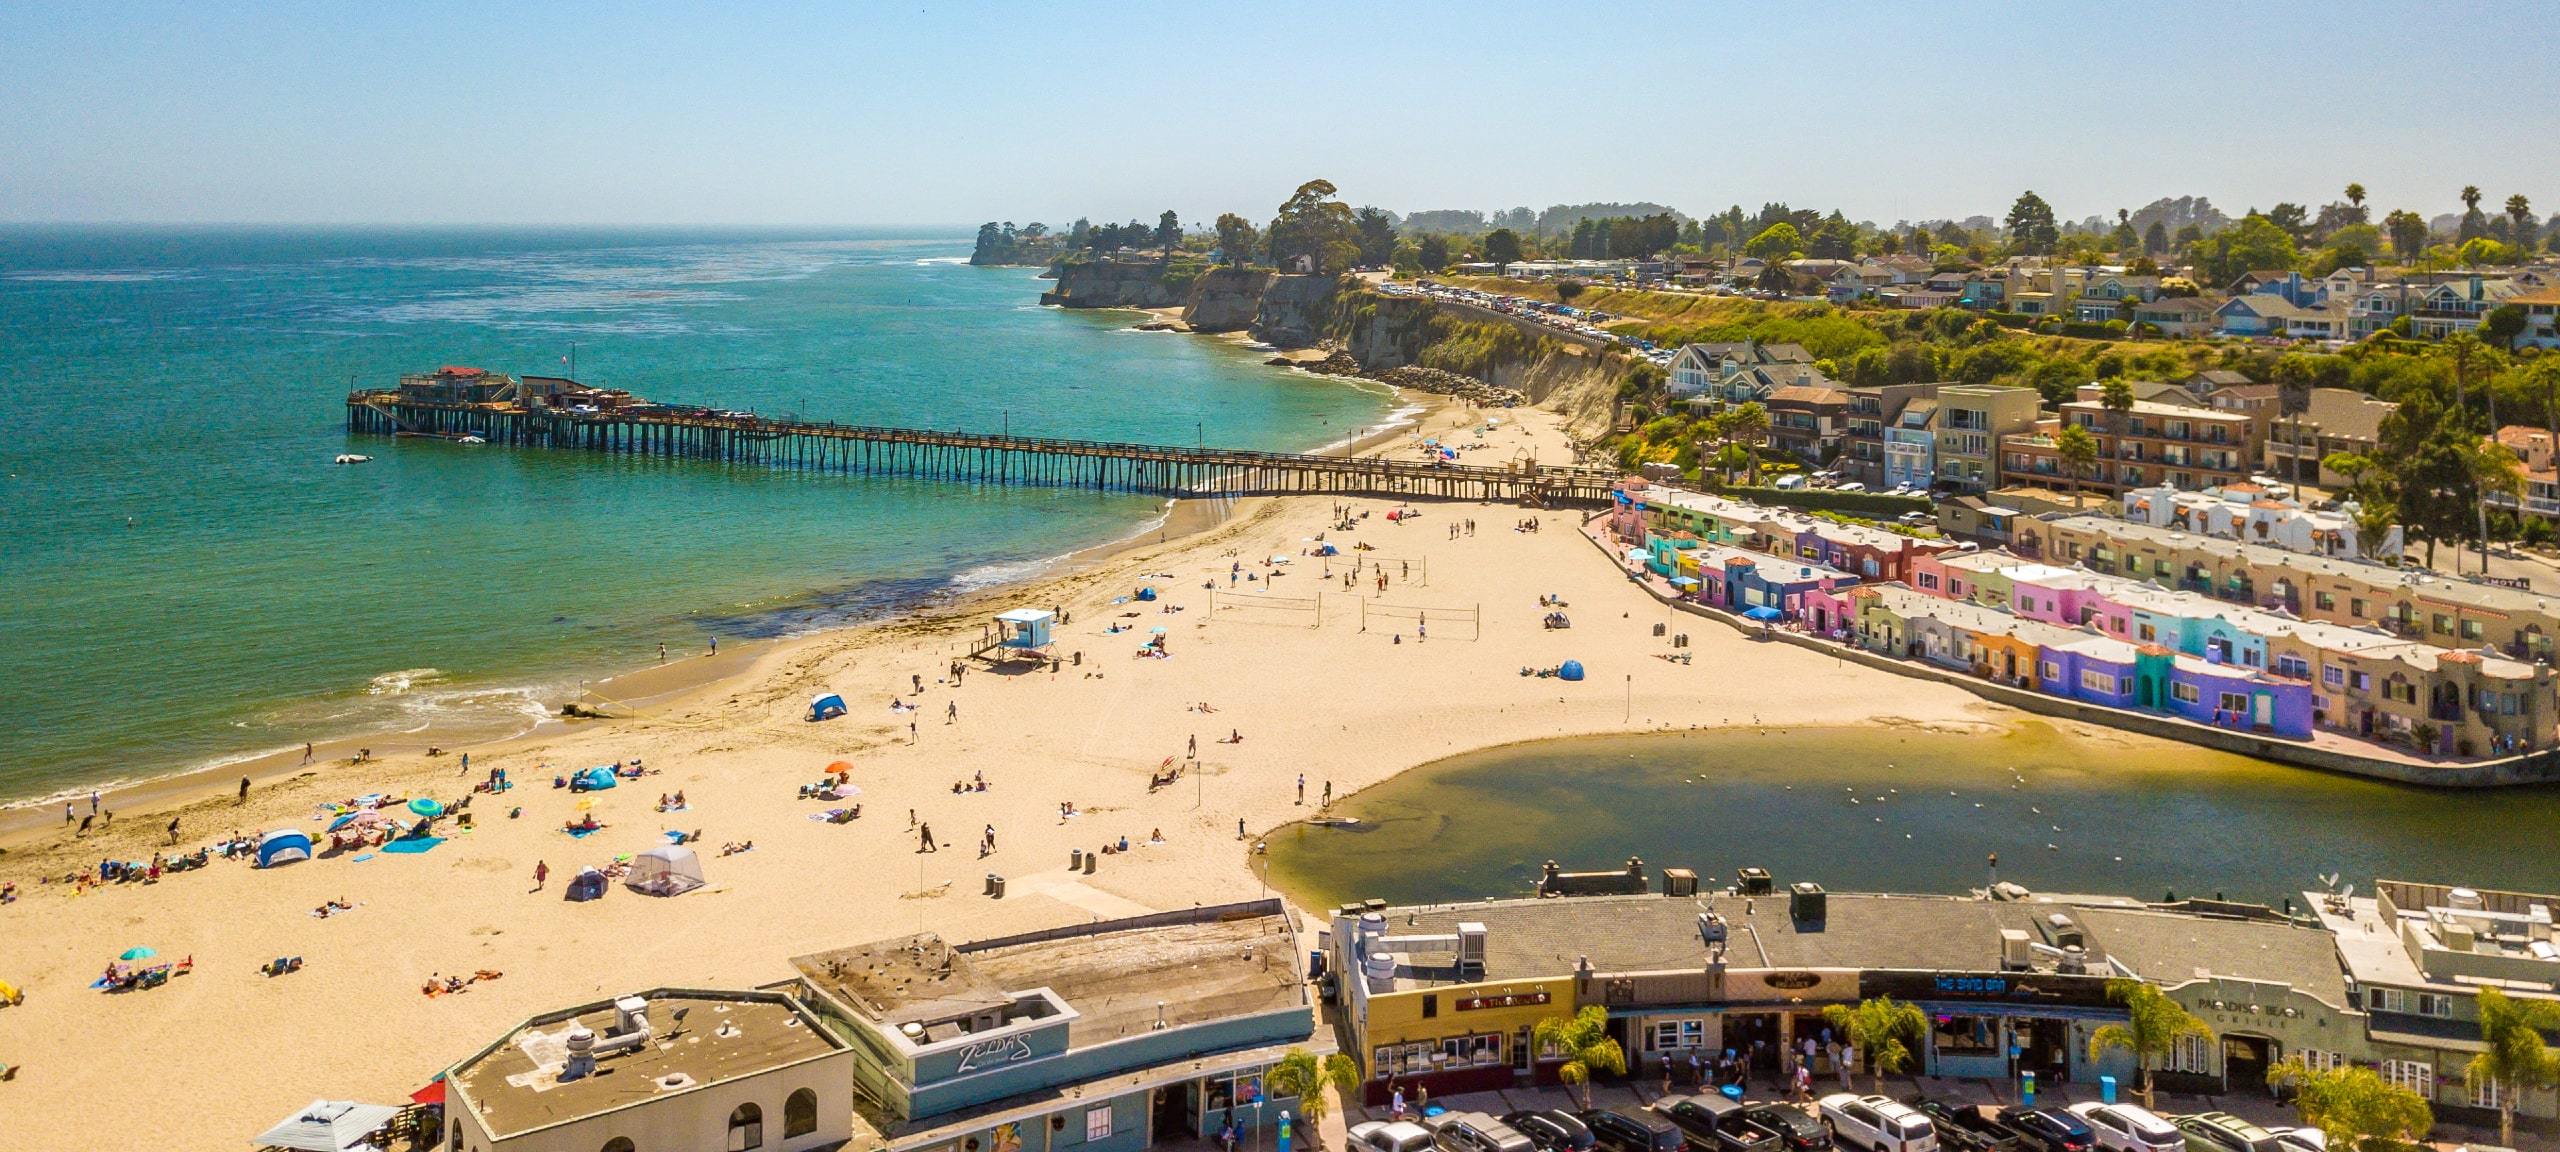 Aerial view of sunny beach and real estate in Santa Cruz, CA